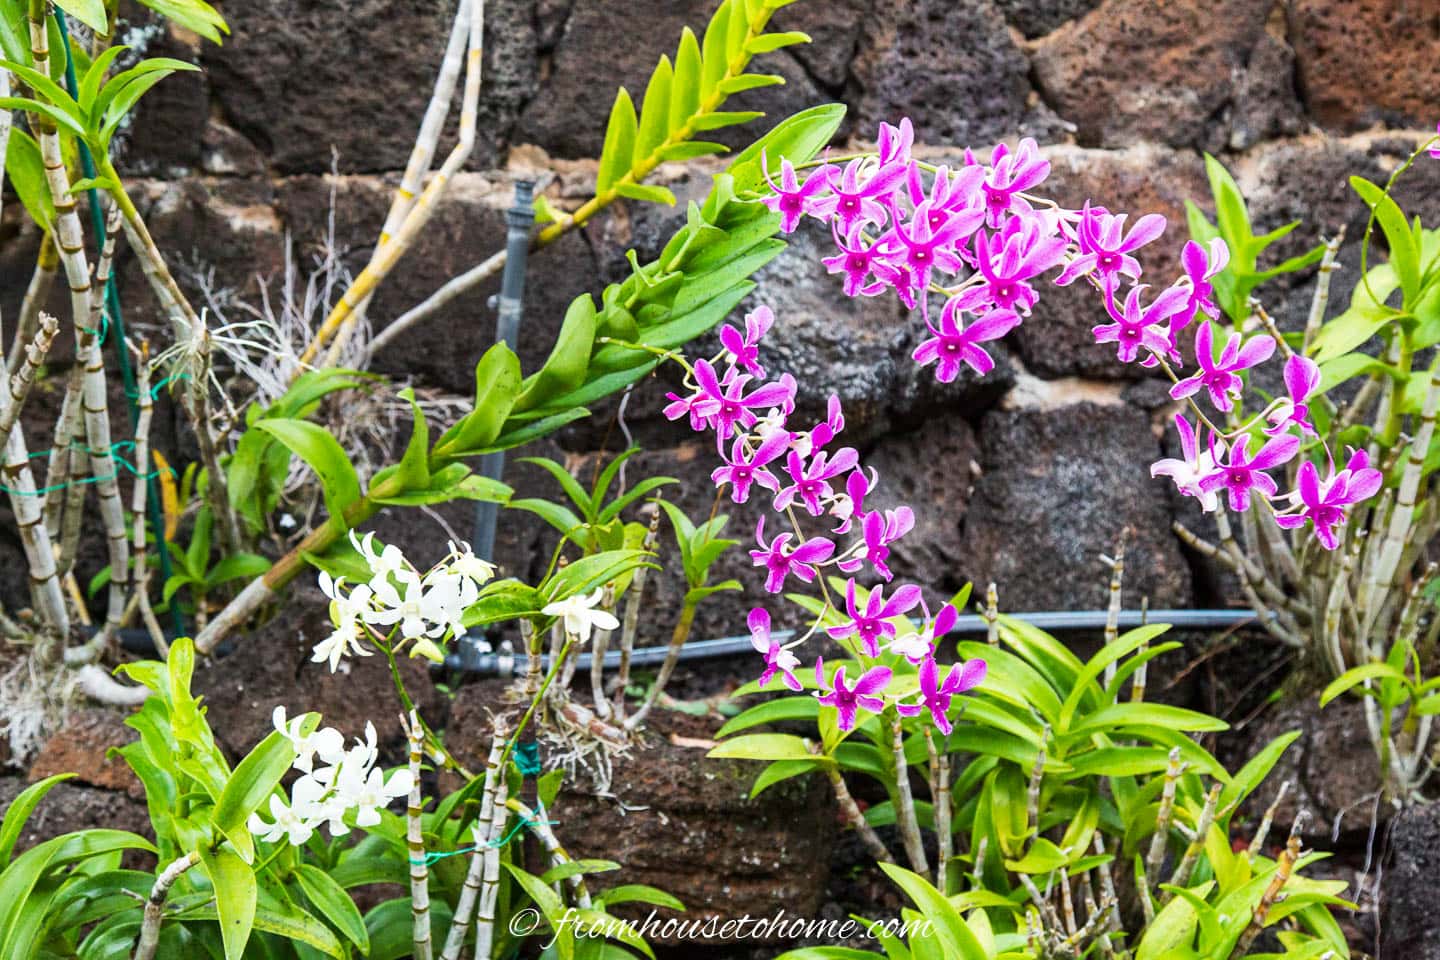 Orchid garden in Kauai, Hawaii